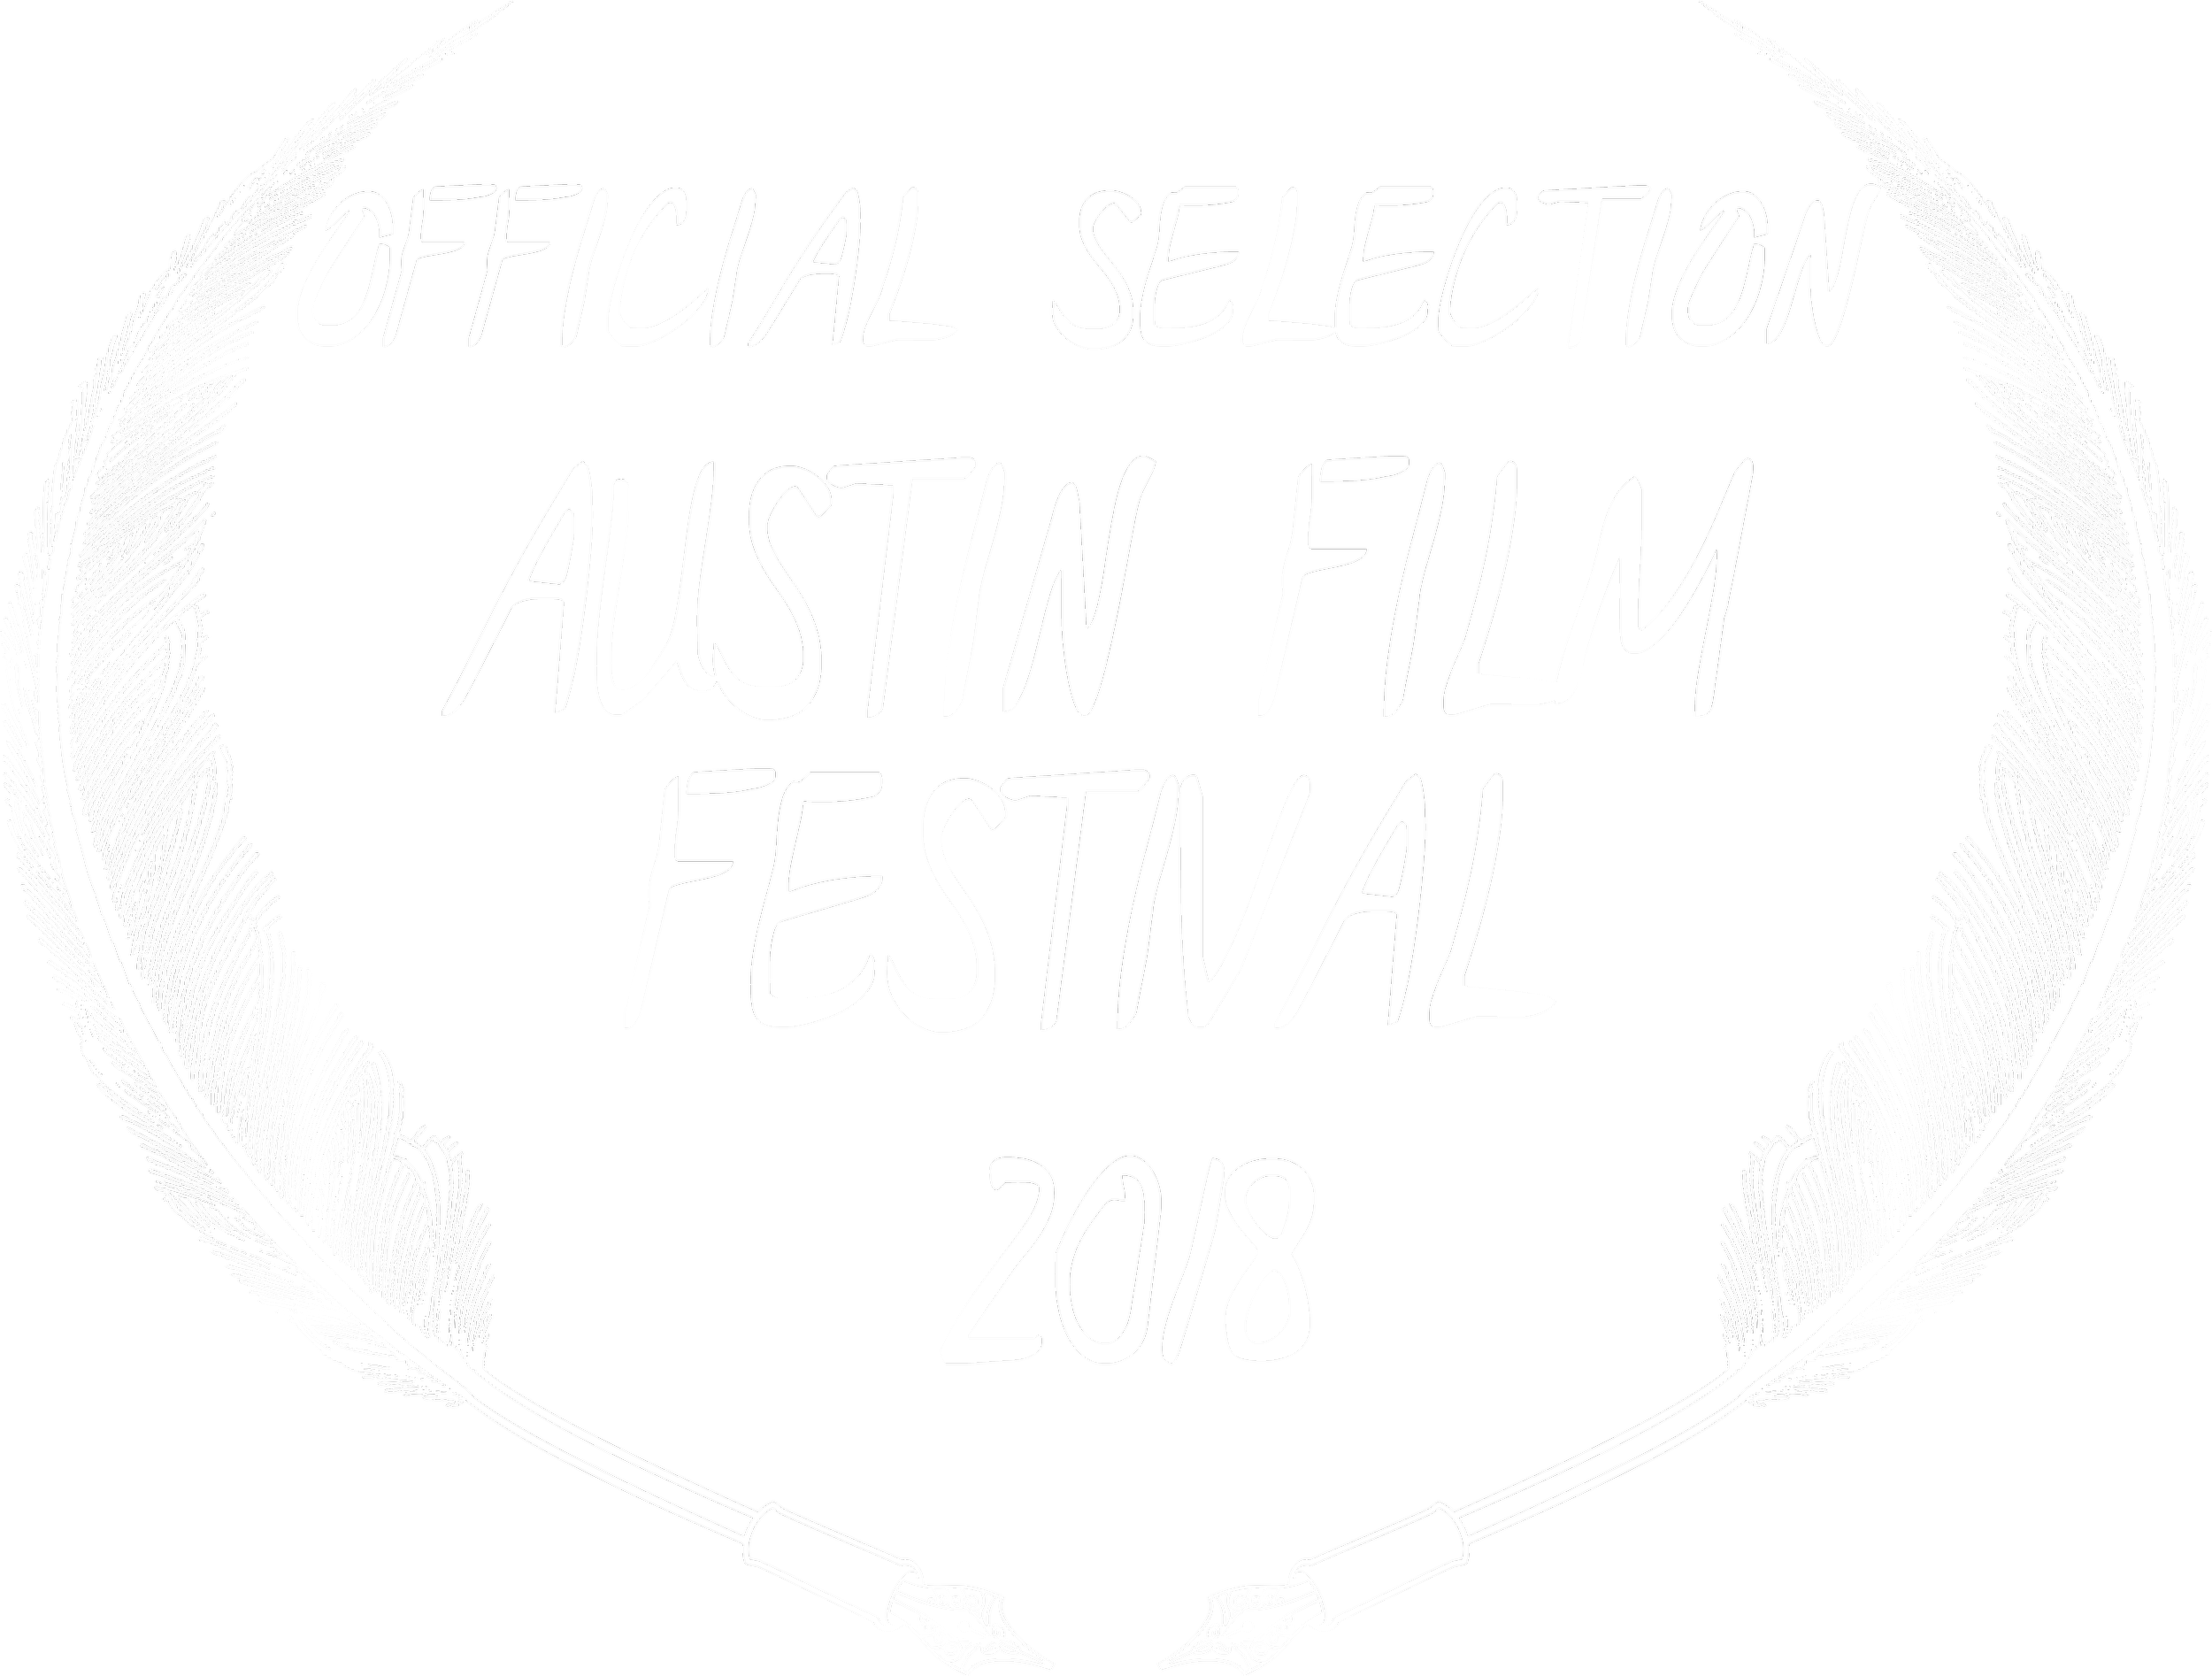 Austin Film Festival laurel